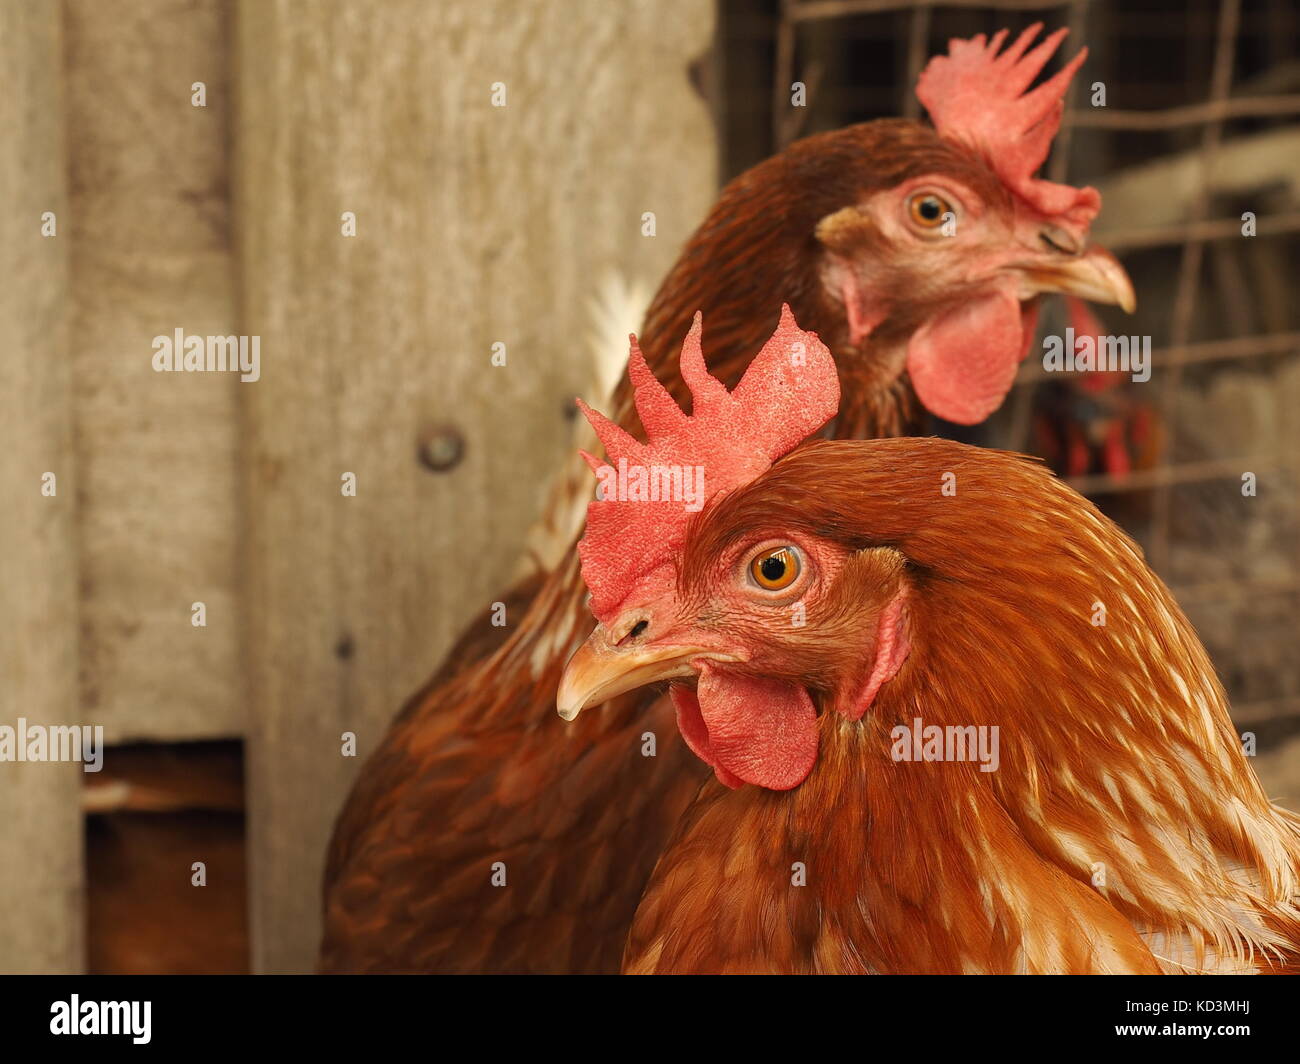 Algunos jaula libre, marrón de las gallinas ponedoras en una granja. Capa de huevos de aves de corral en un rango libre granja. Las gallinas ponedoras de huevo marrón. Avicultura ético. Foto de stock